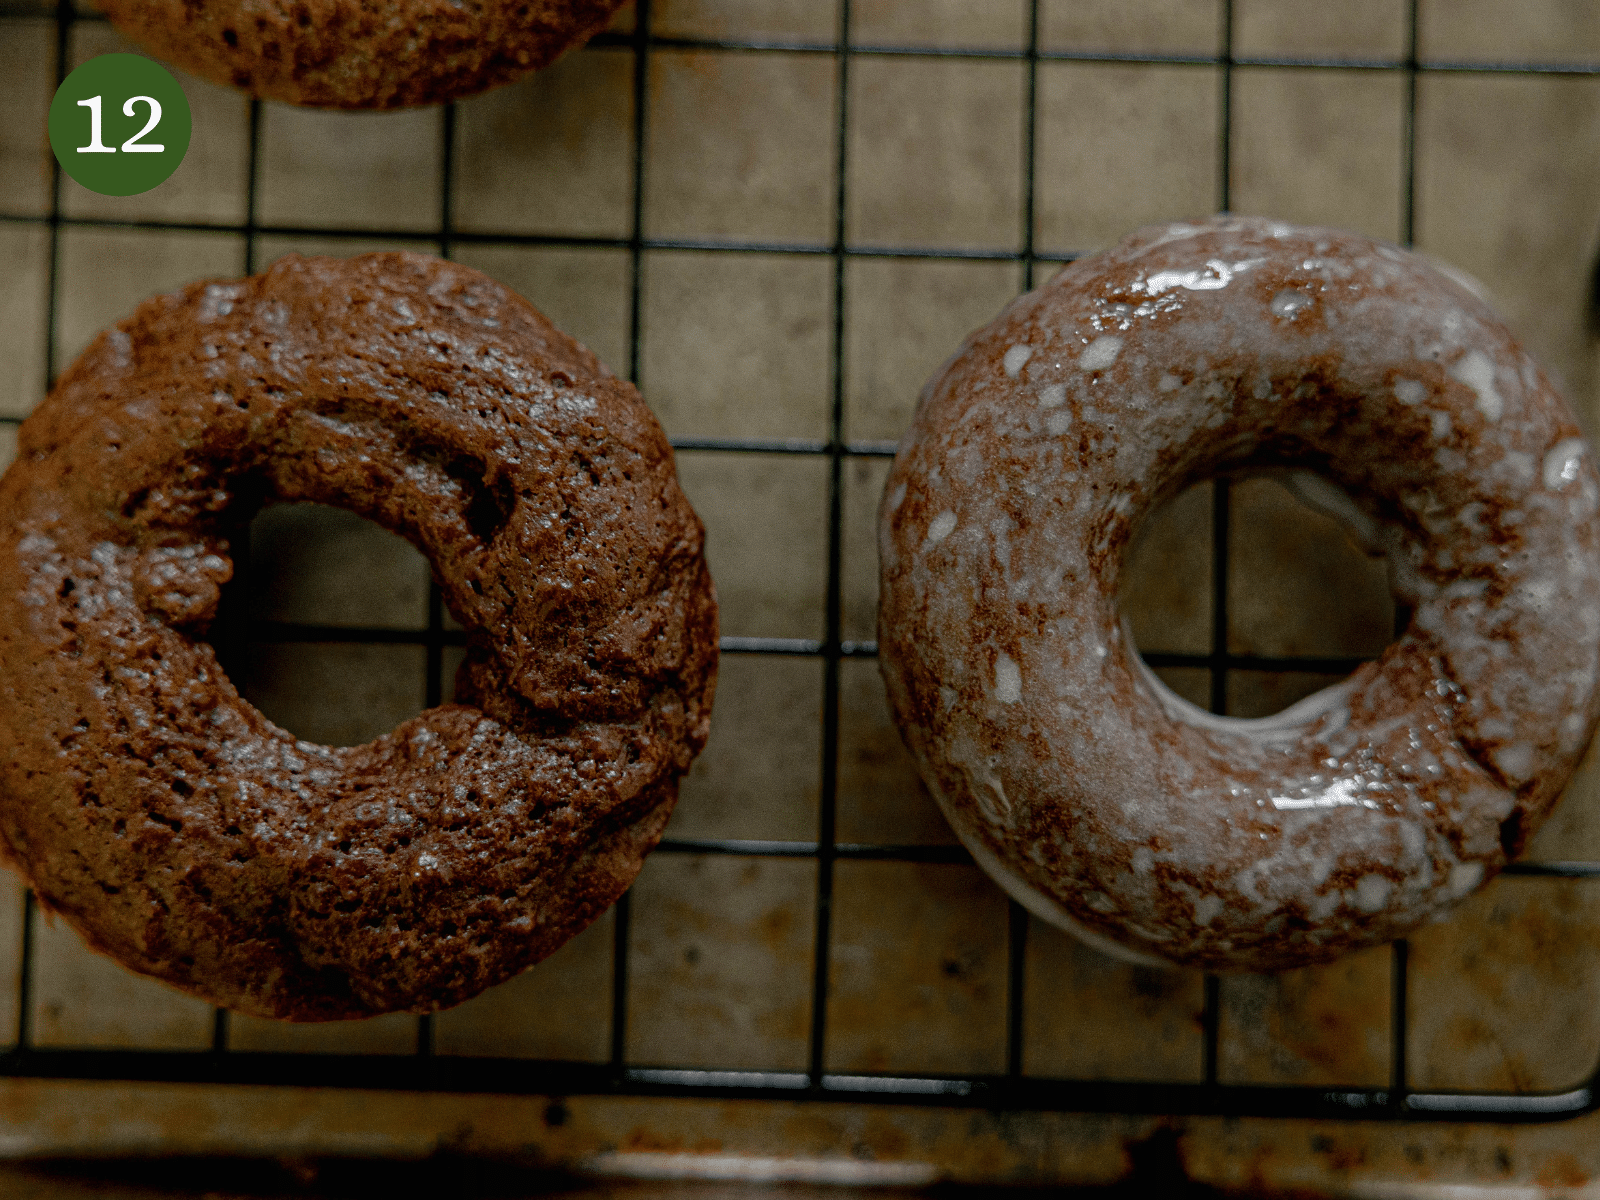 A glazed vs unglazed donut.